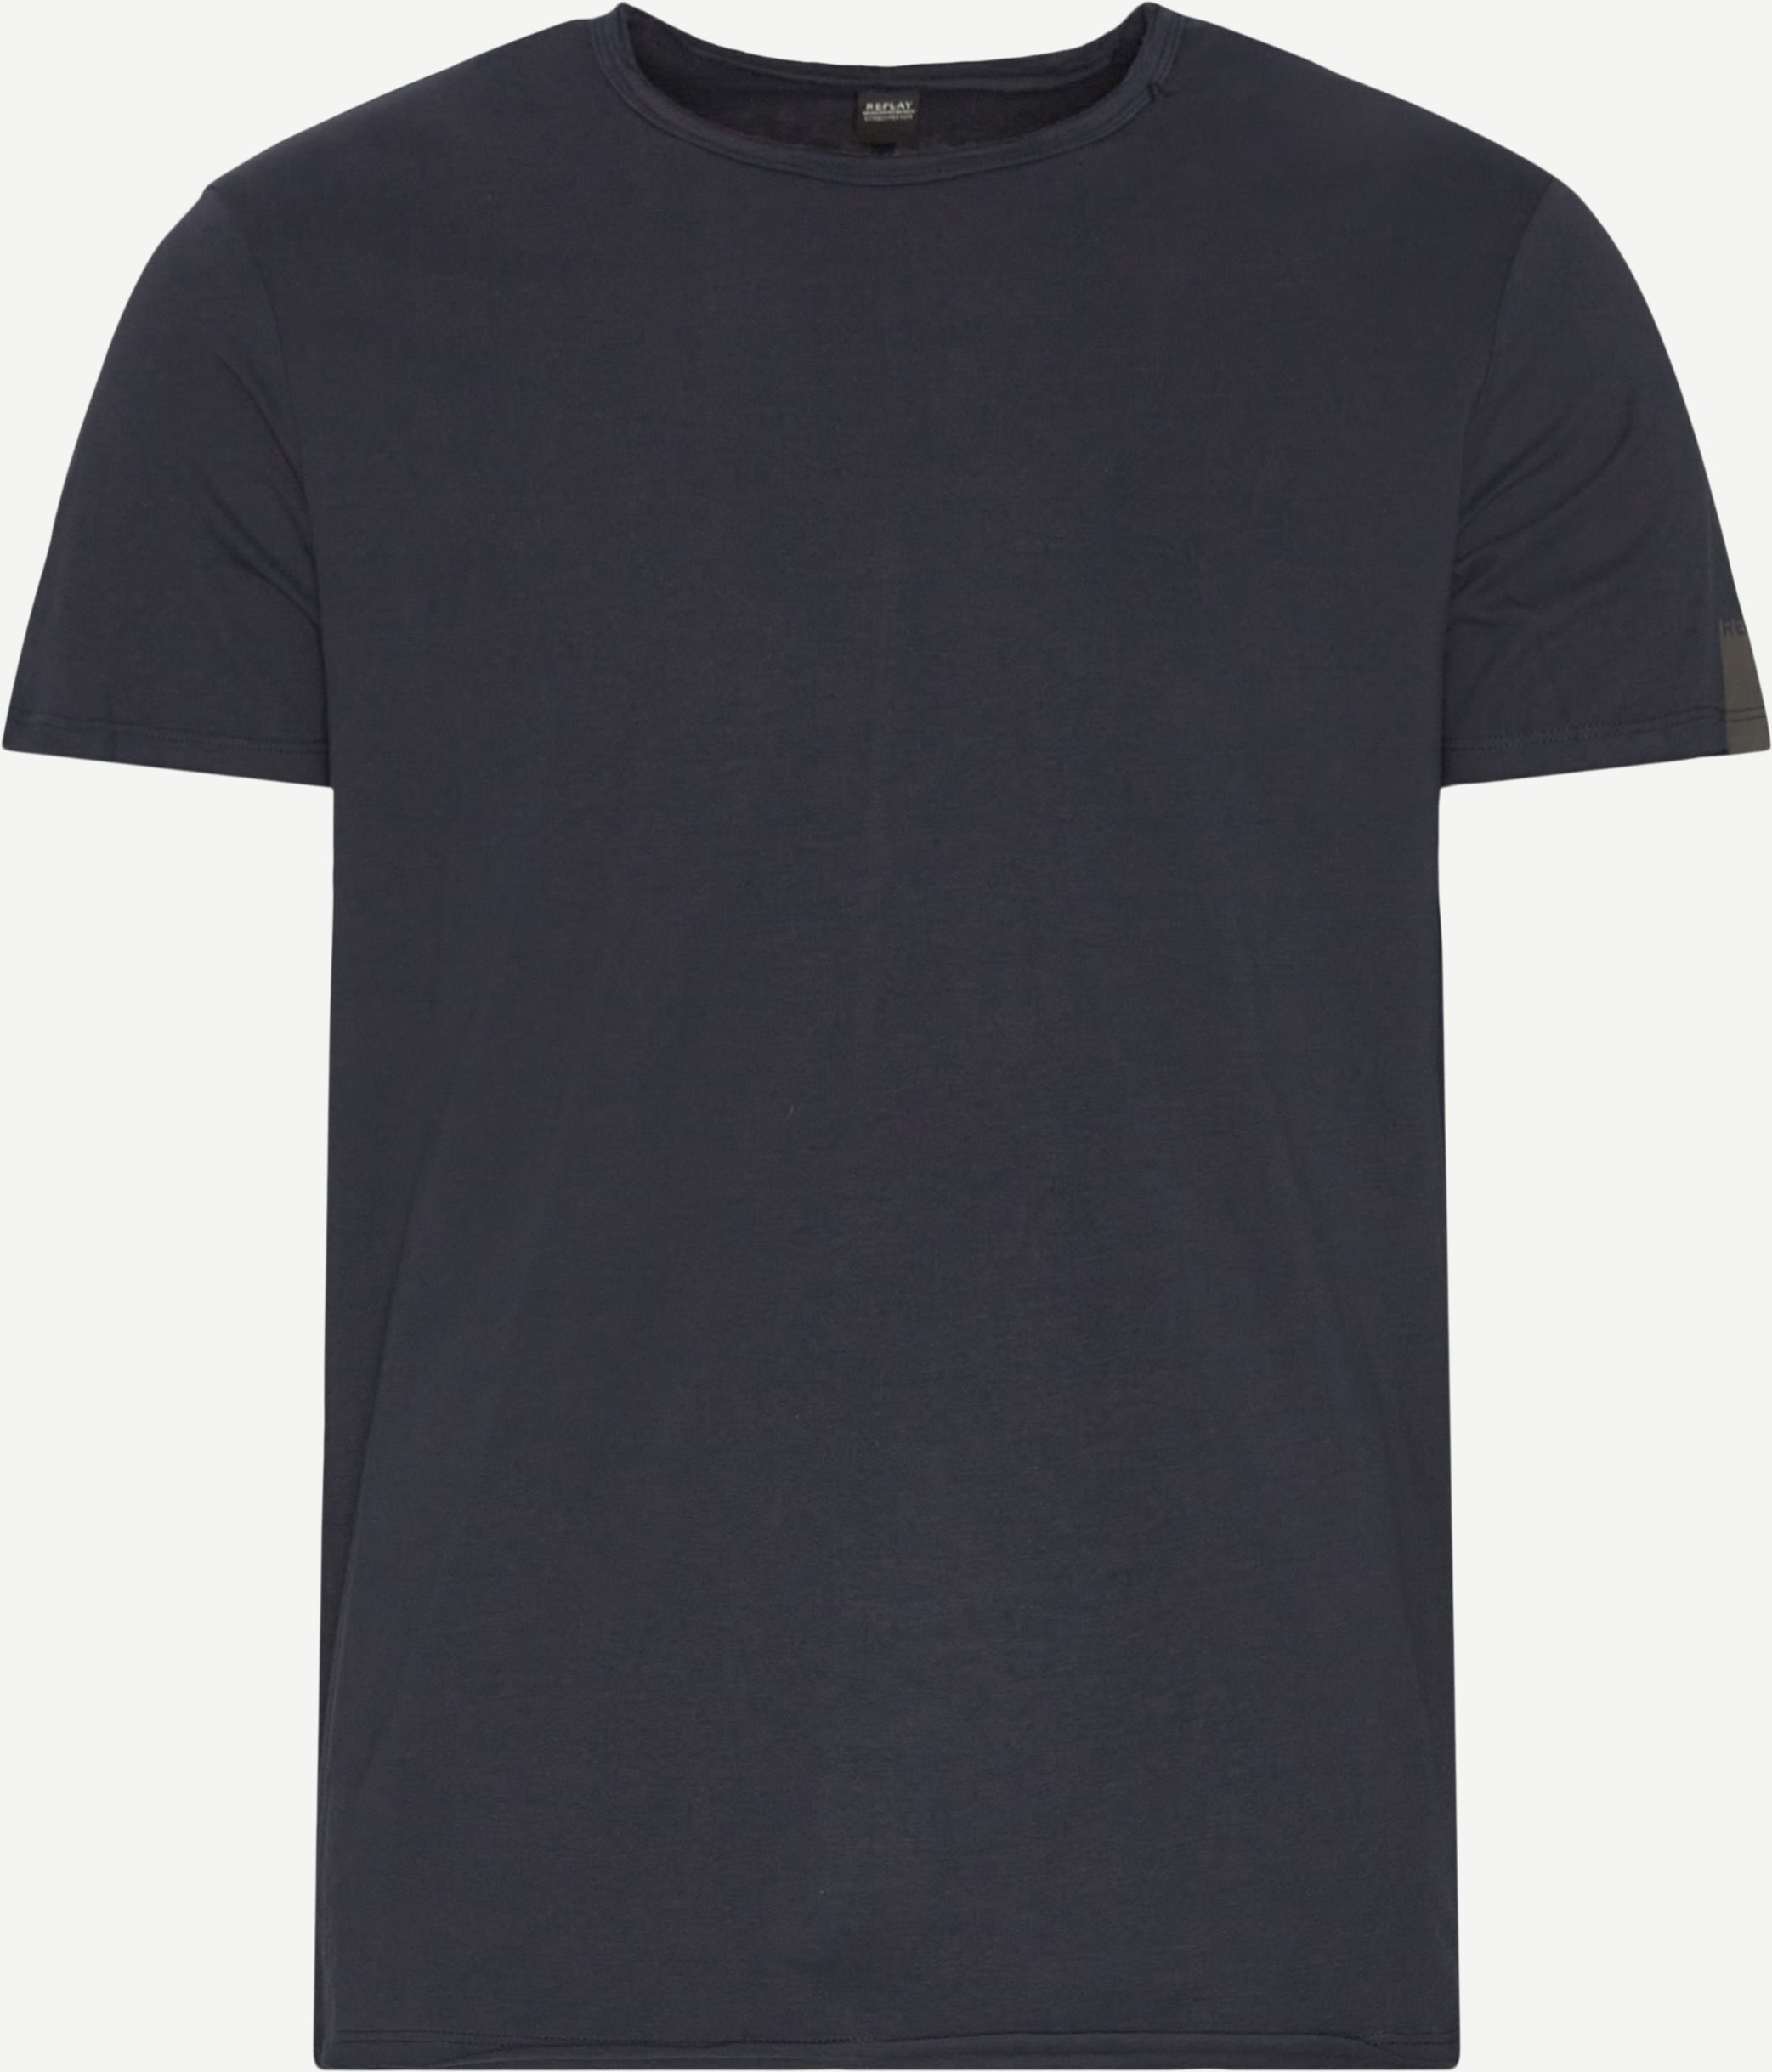 M3590 T-shirt - T-shirts - Regular fit - Blå